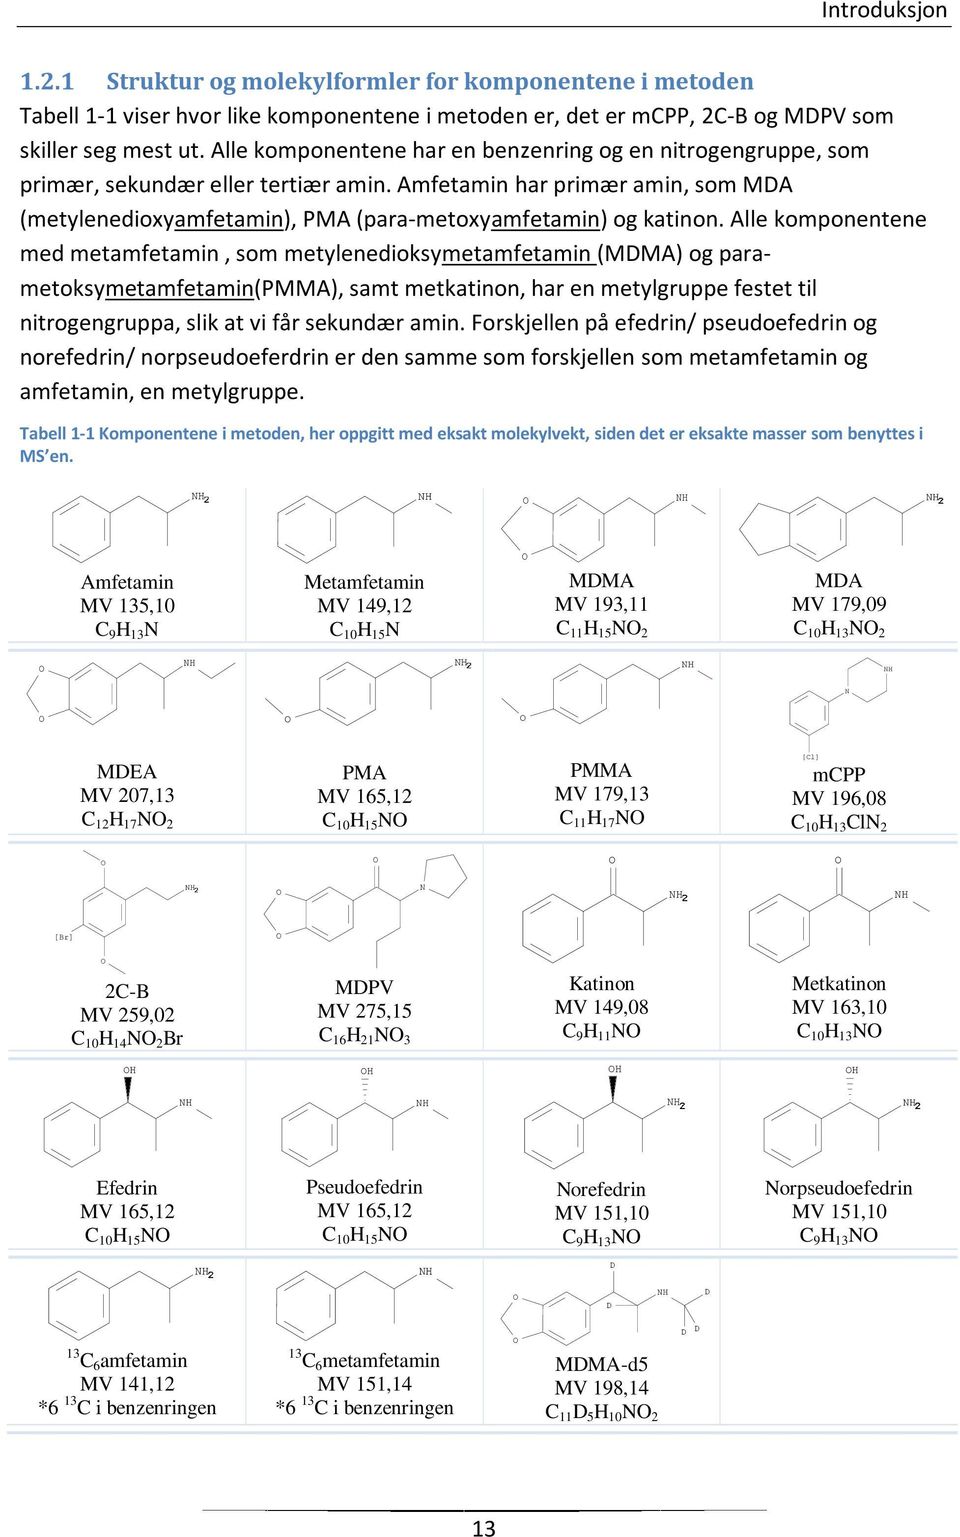 Alle komponentene med metamfeta, som metylenedioksymetamfeta (MDMA) og parametoksymetamfeta(pmma), samt metkatinon, har en metylgruppe festet til nitrogengruppa, slik at vi får sekundær a.